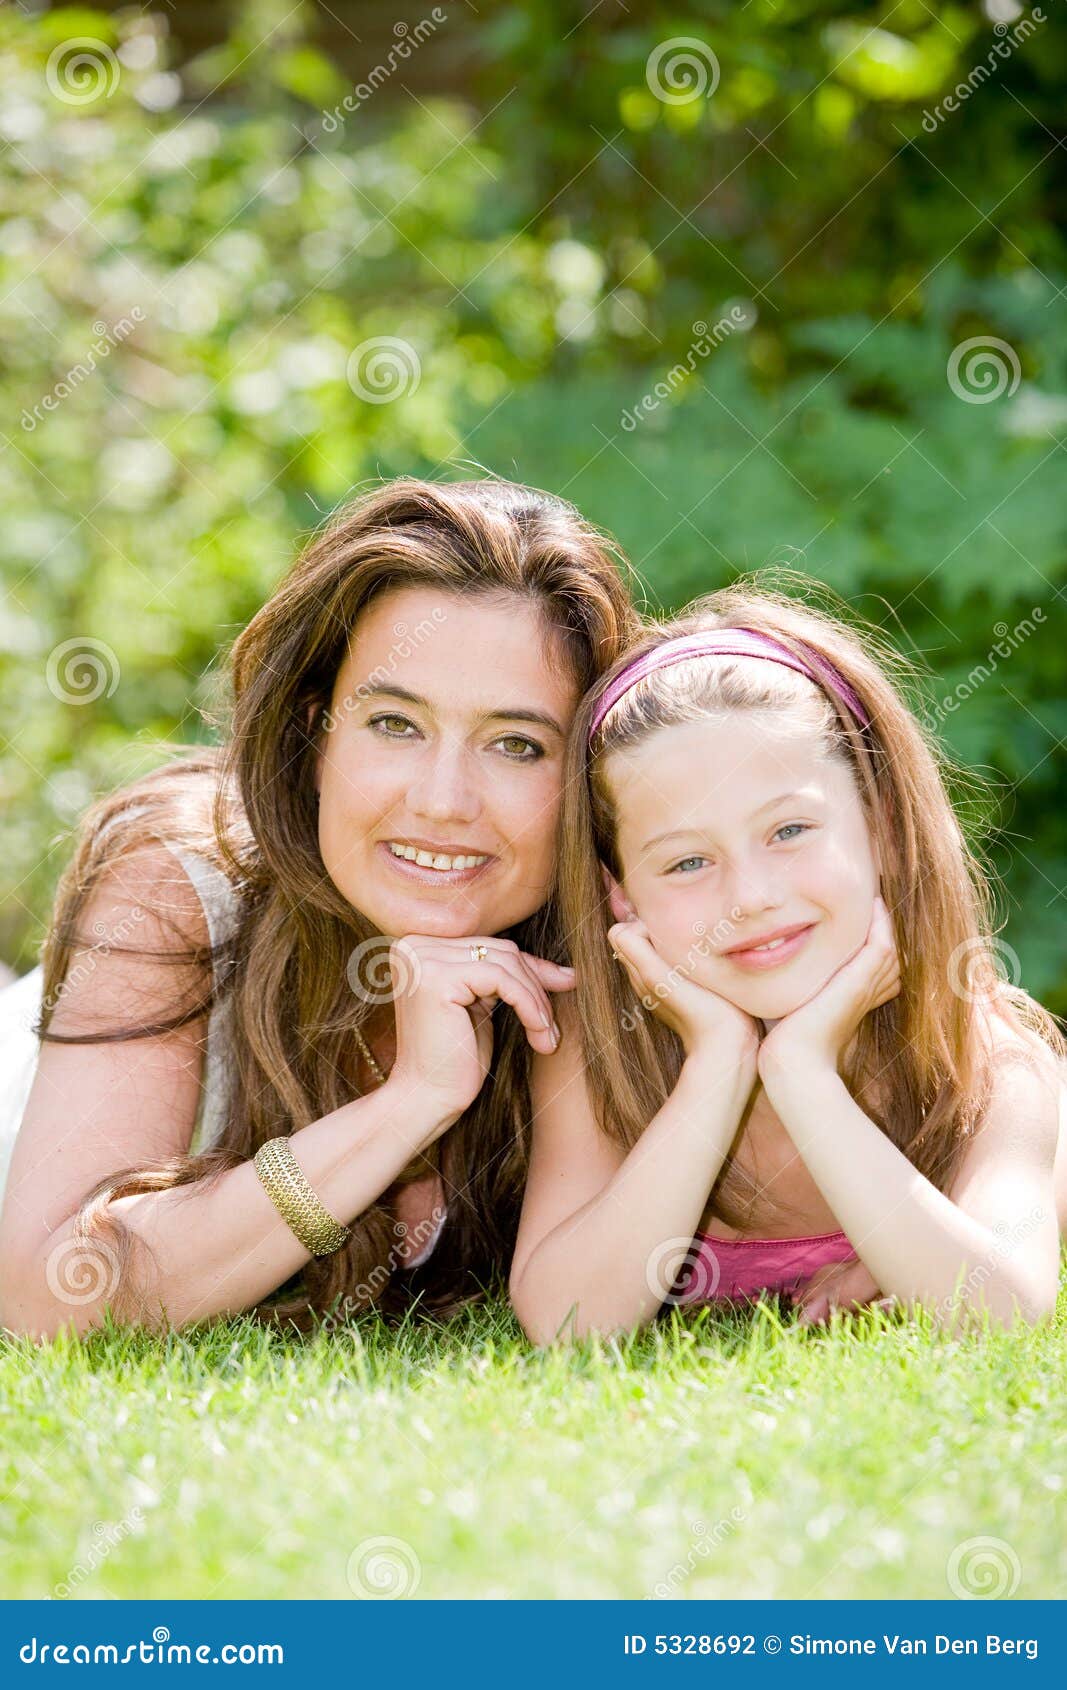 Маму и дочку одновременно. Мама и дочь вместе. Мама с дочкой на траве. Мама и дочка картинки. Мать и дочь естественность.